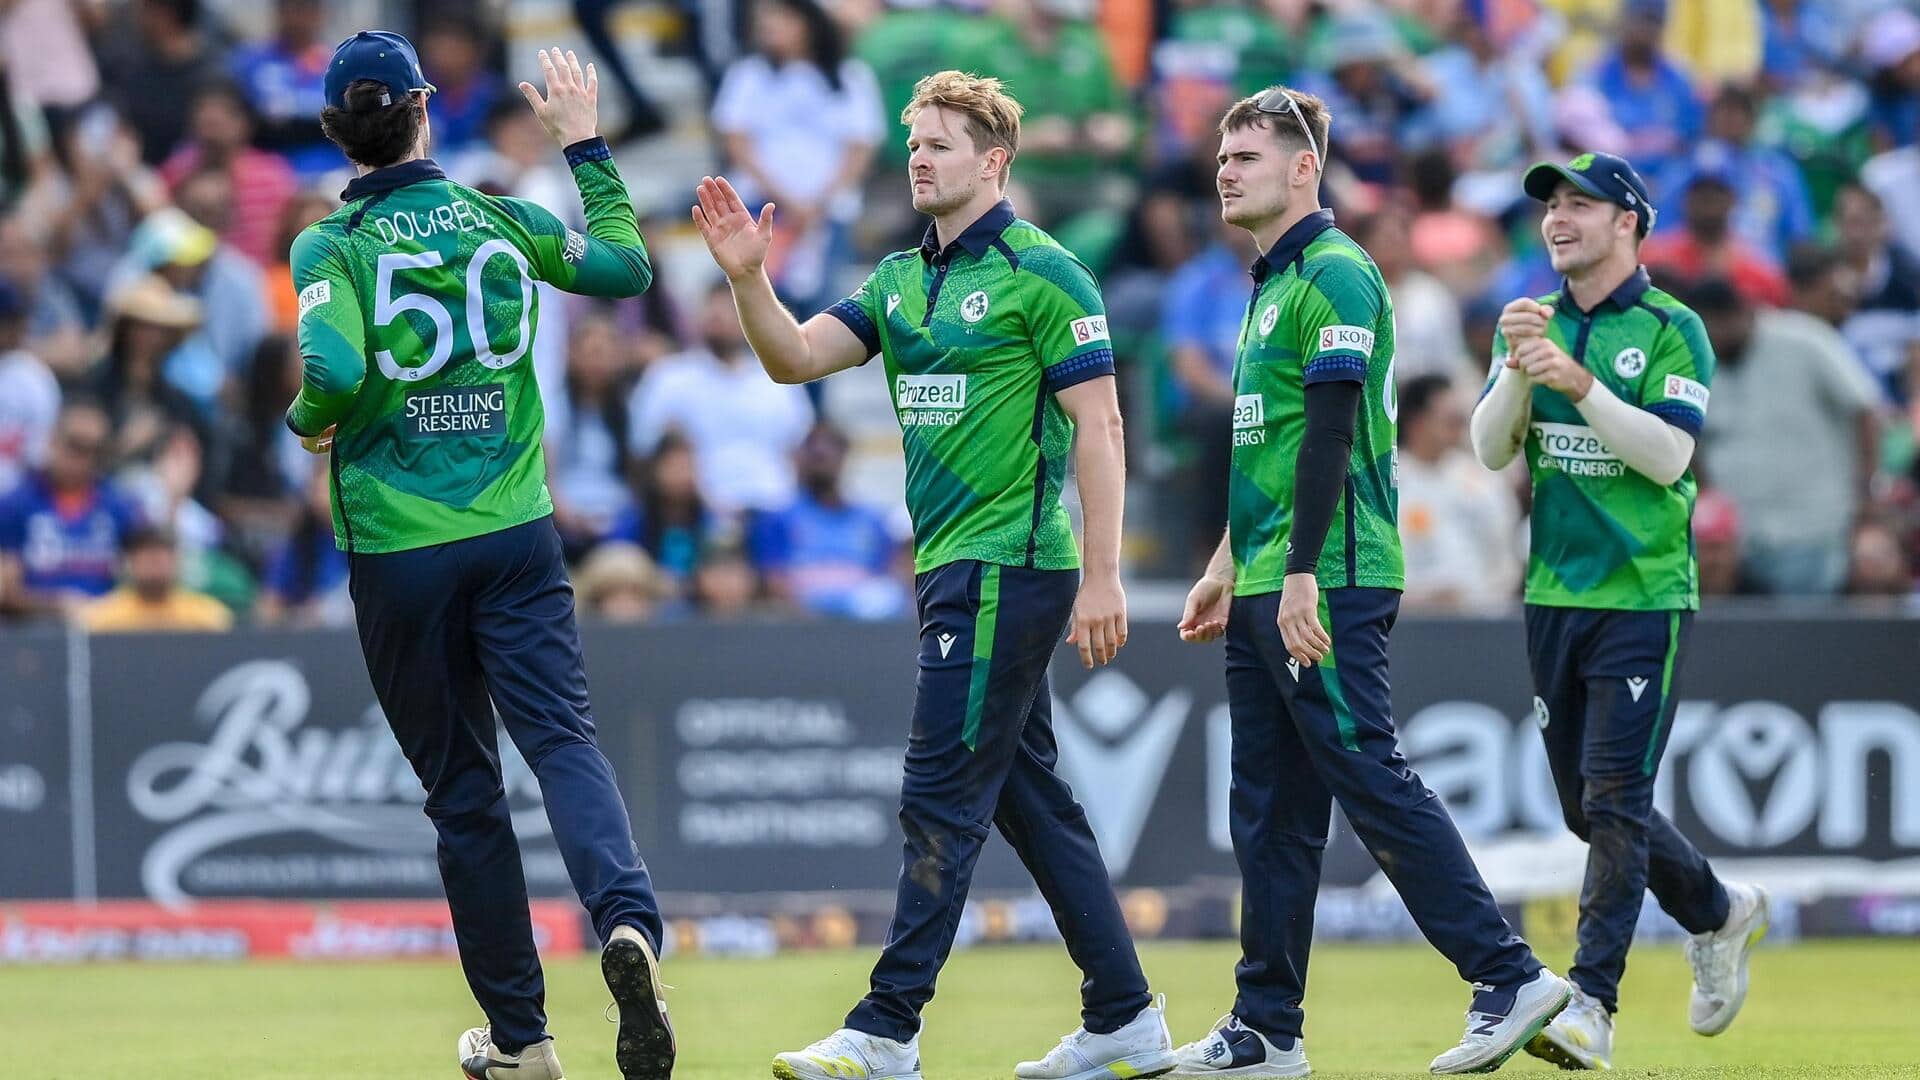 इंग्लैंड बनाम आयरलैंड: वनडे सीरीज में बन सकते हैं ये प्रमुख रिकॉर्ड्स